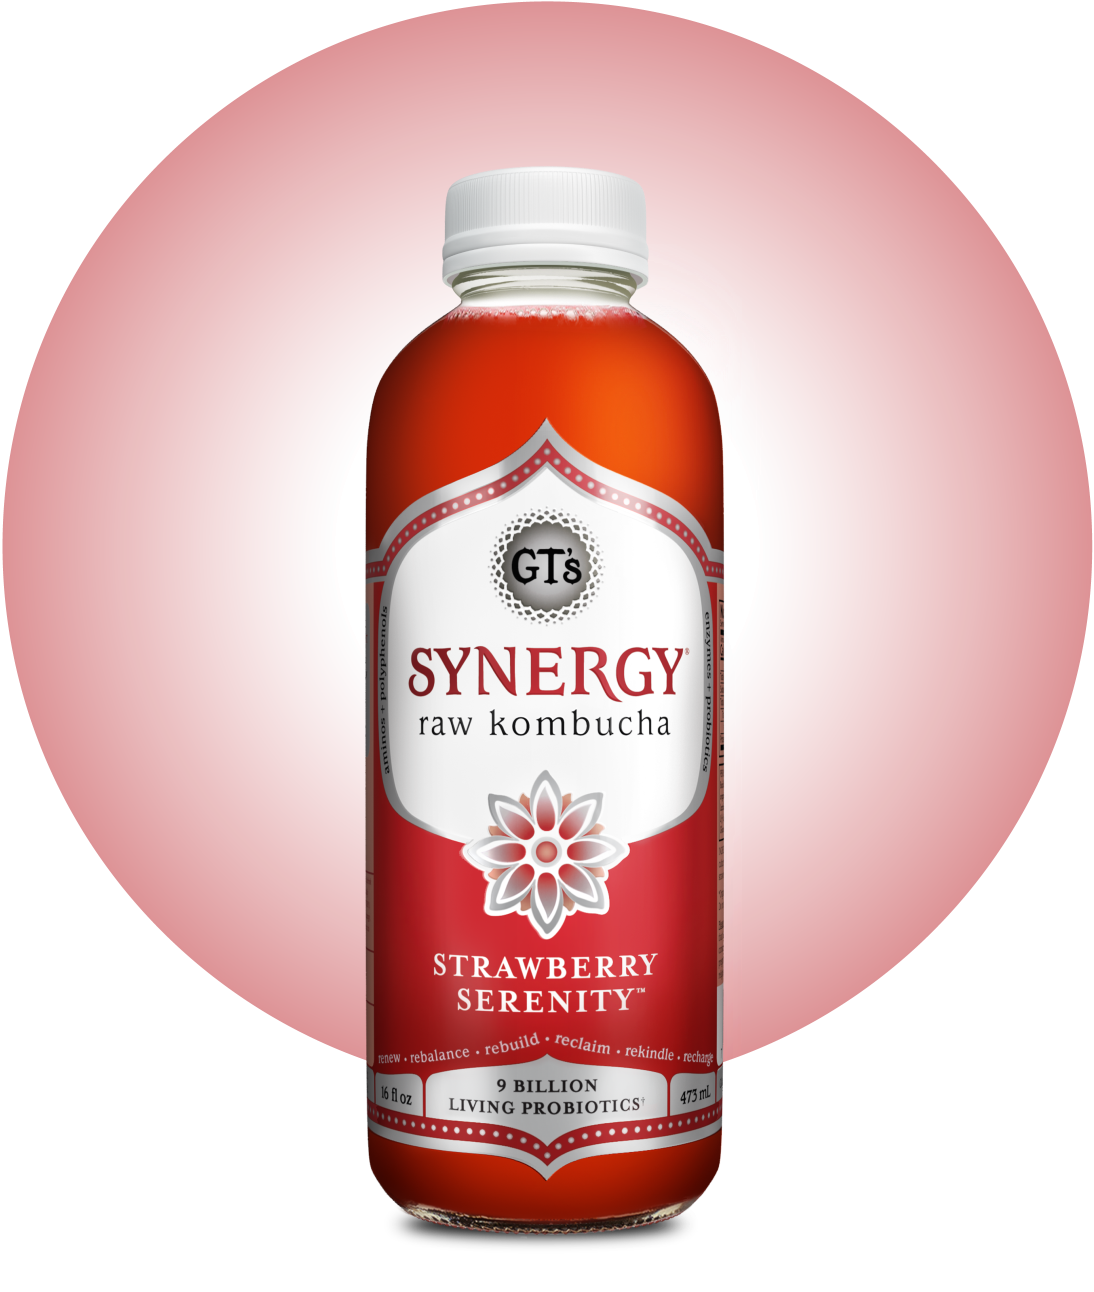 GT's SYNERGY Raw Kombucha Strawberry Serenity Bottle